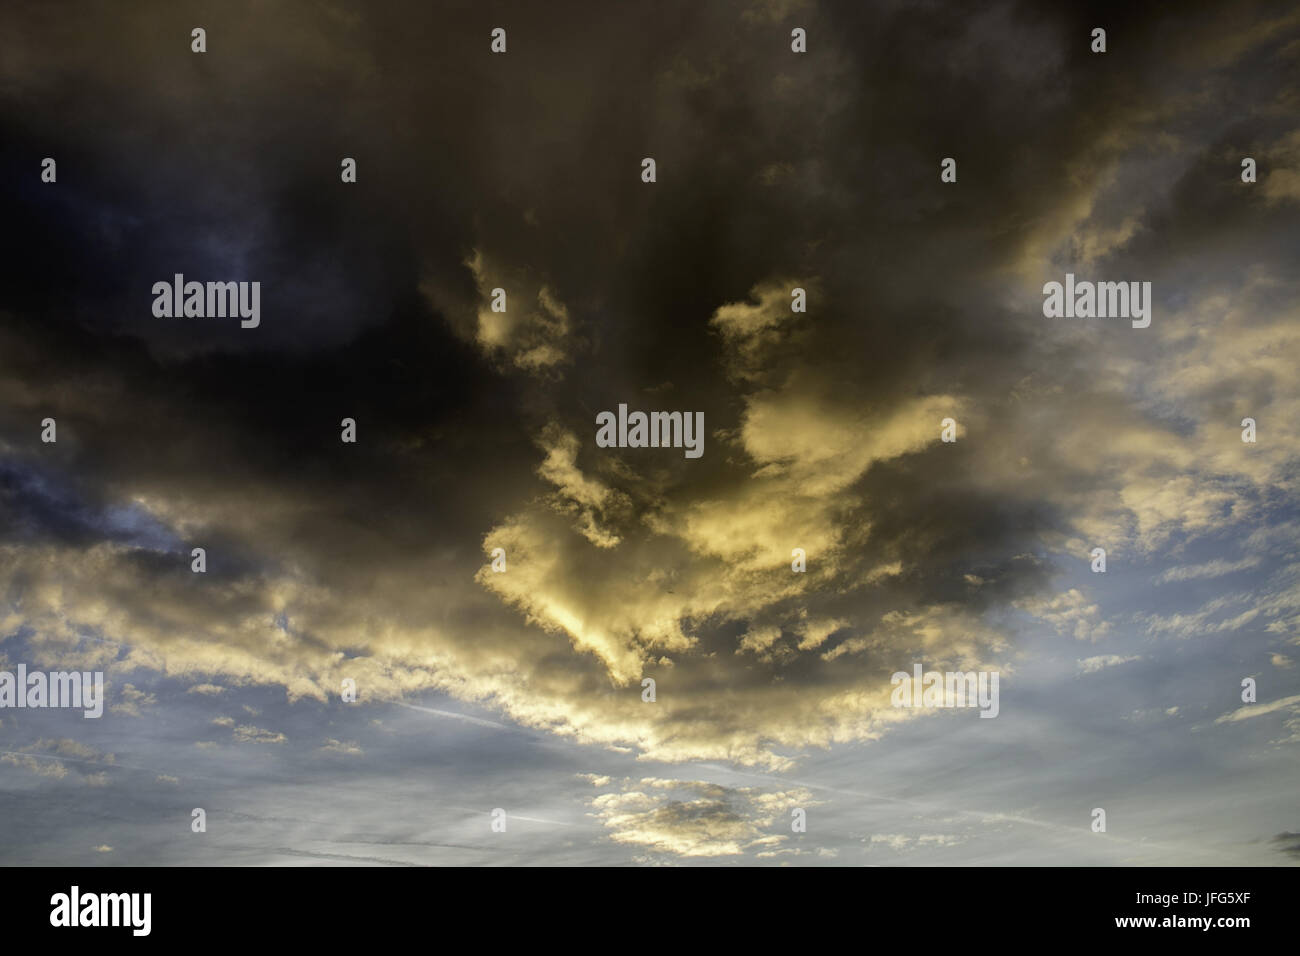 Himmel mit bedrohlicher Wolkenformation Stock Photo